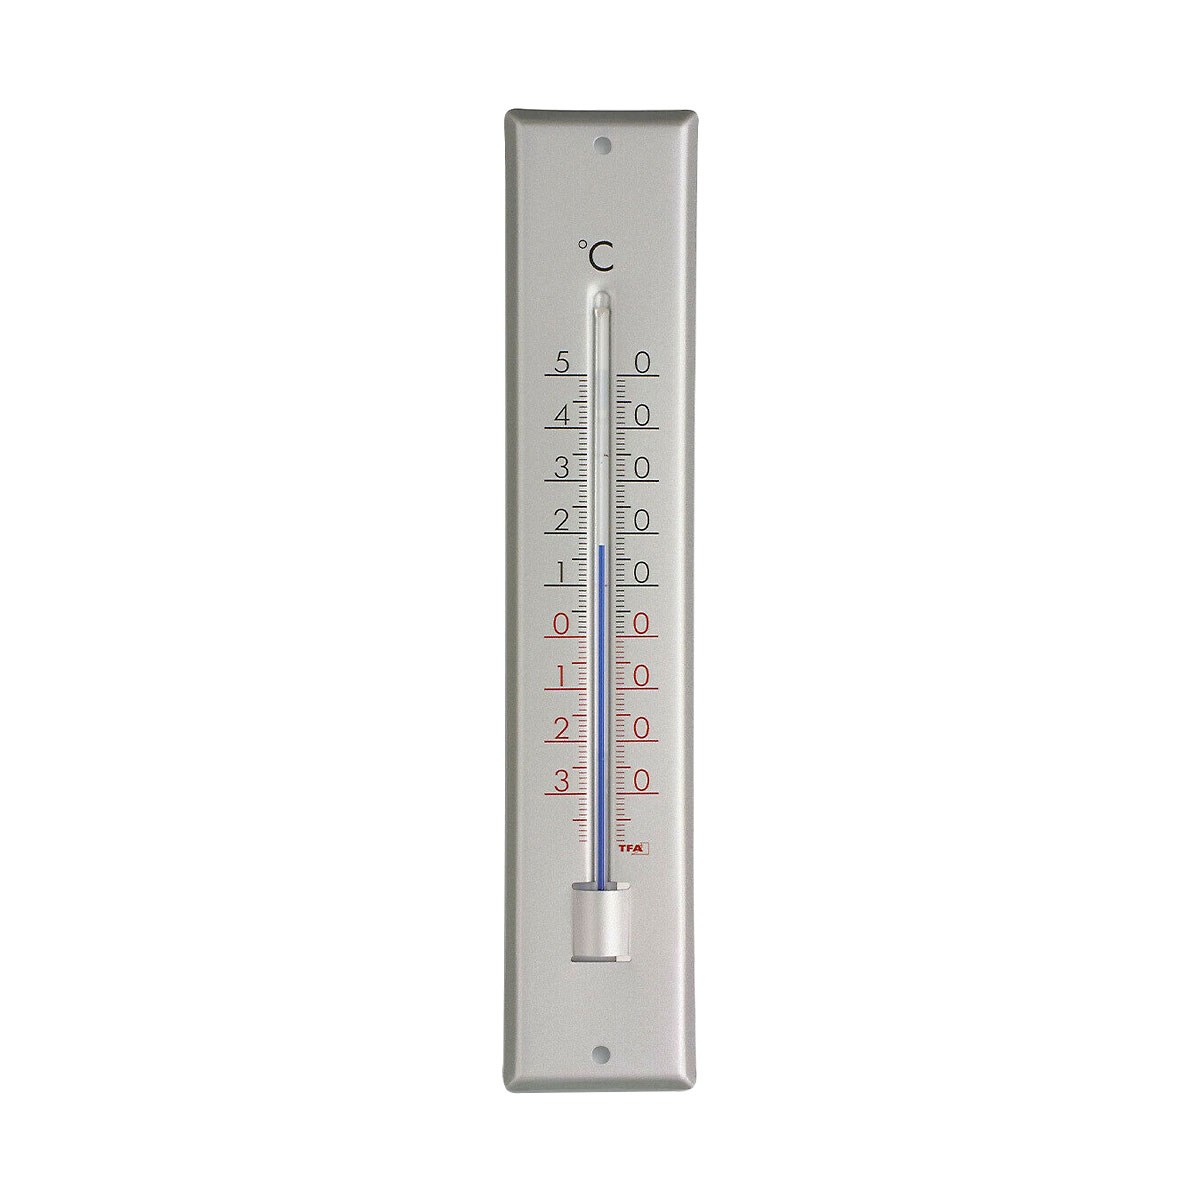 Analoges Innen-Außen-Thermometer